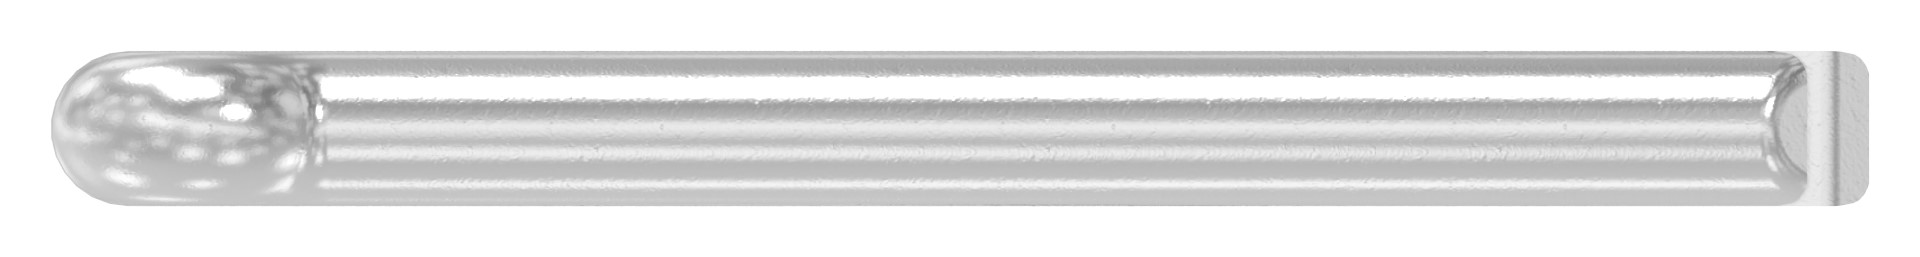 Splint 5x50mm, D94, V2A